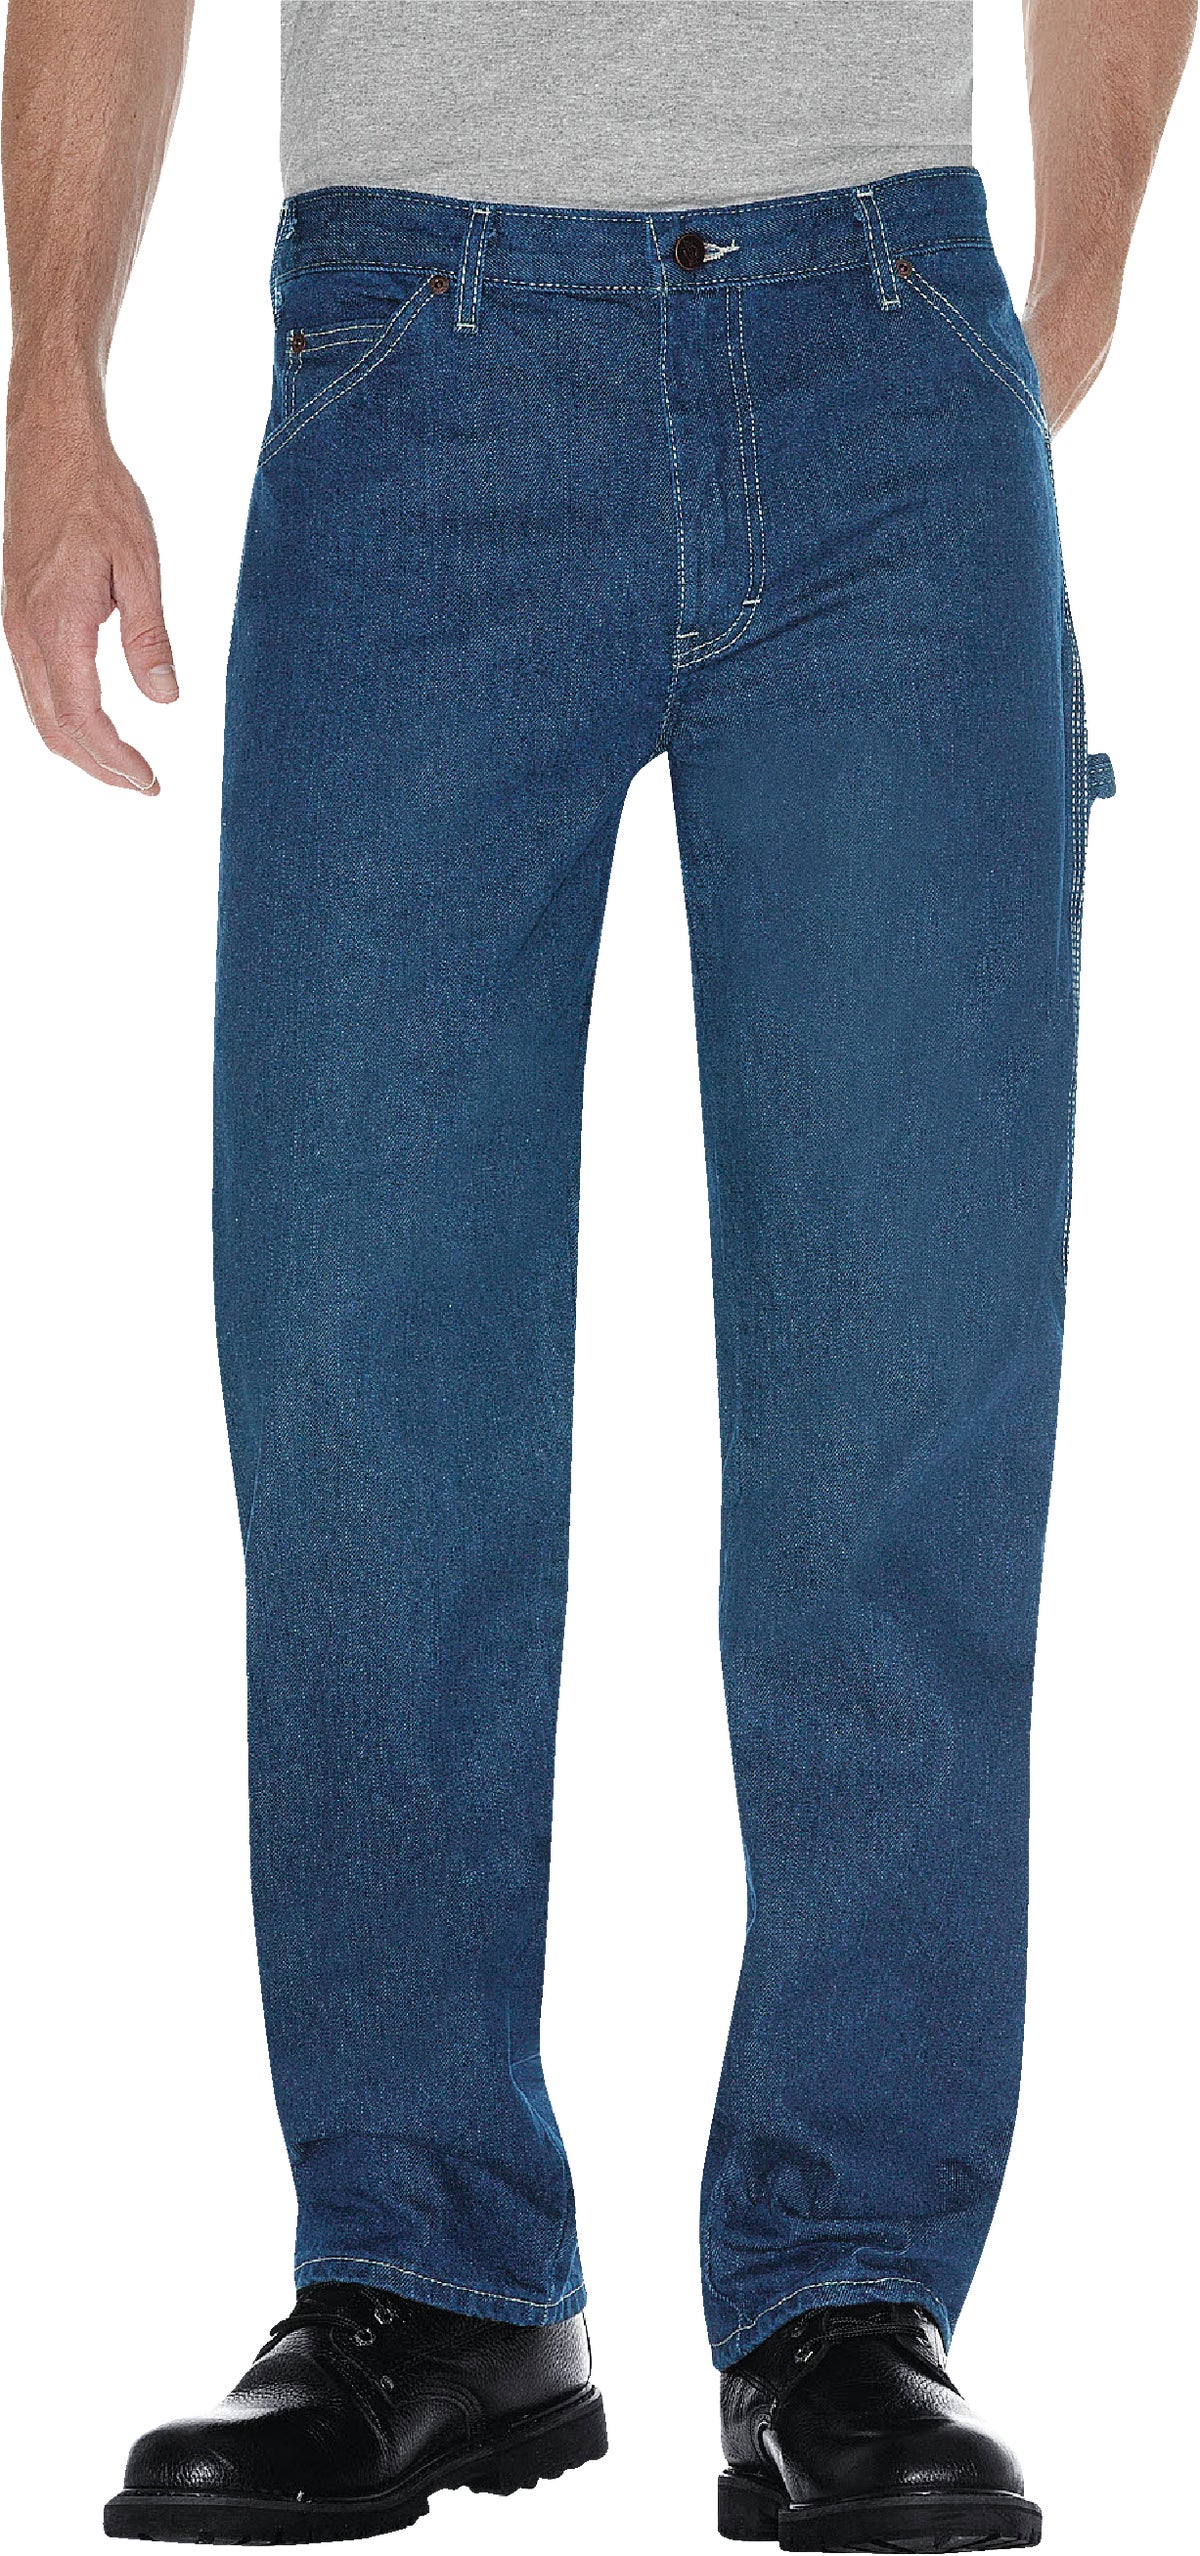 Buy Dickies Relaxed Fit Men's Carpenter Jeans 32 X 32, Denim